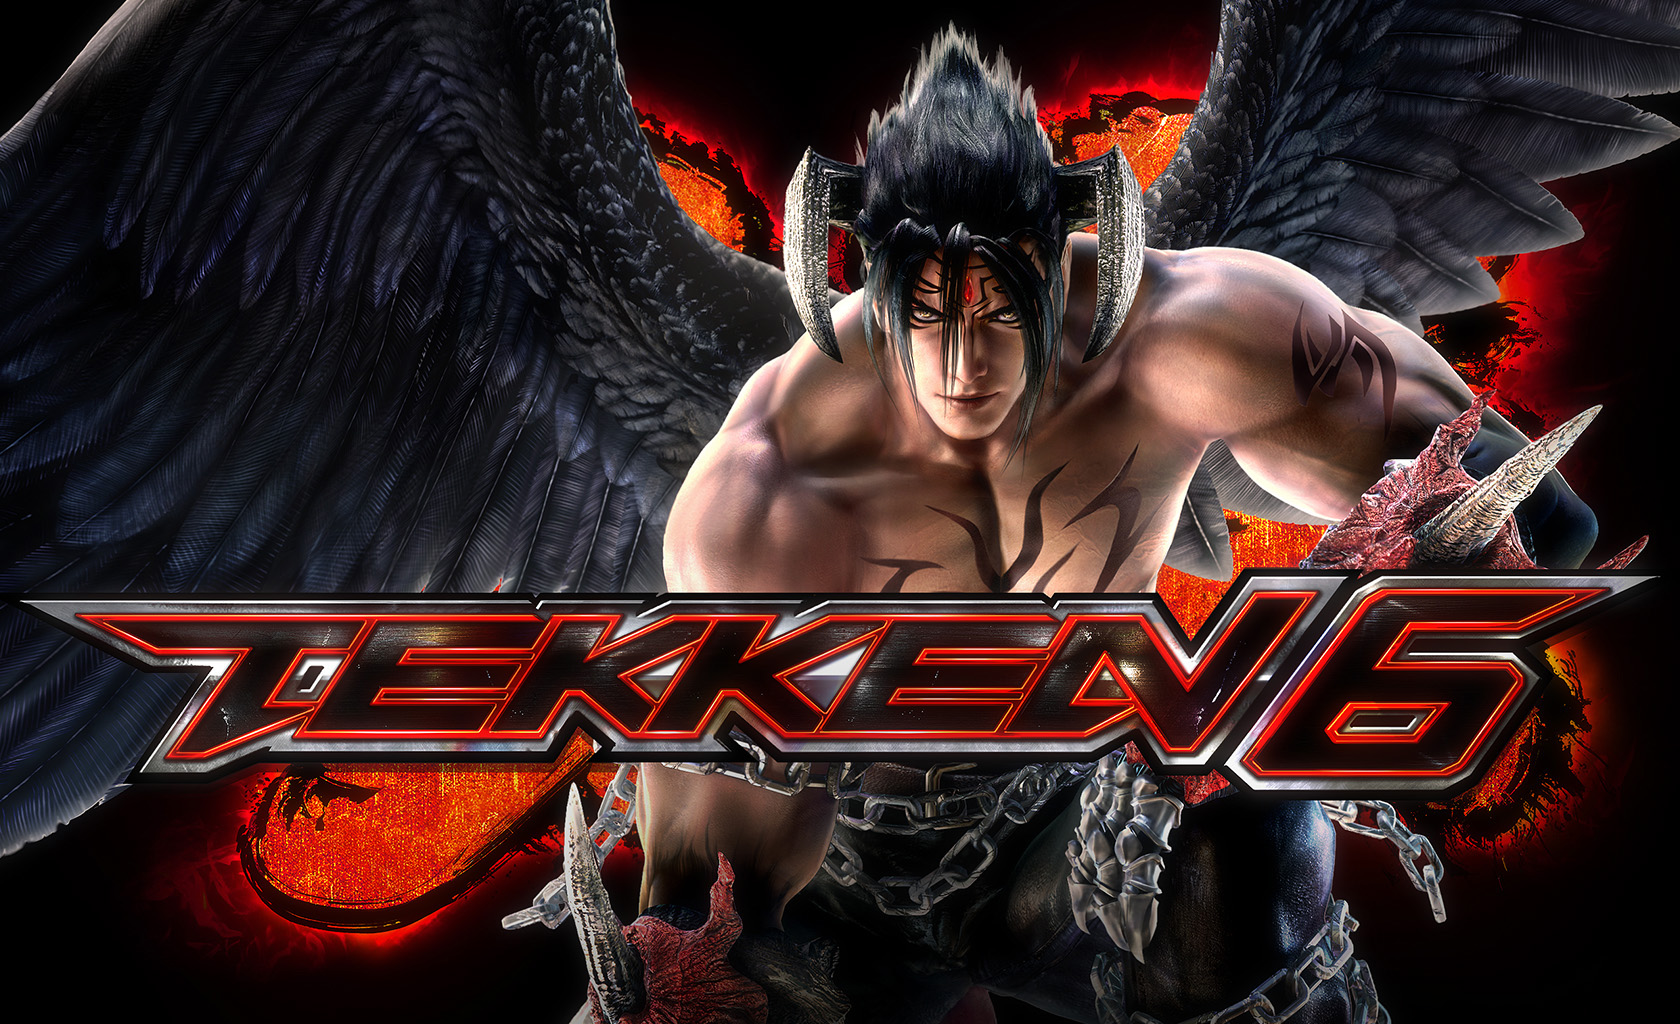 Jin Wallpaper Tekken Devil HD